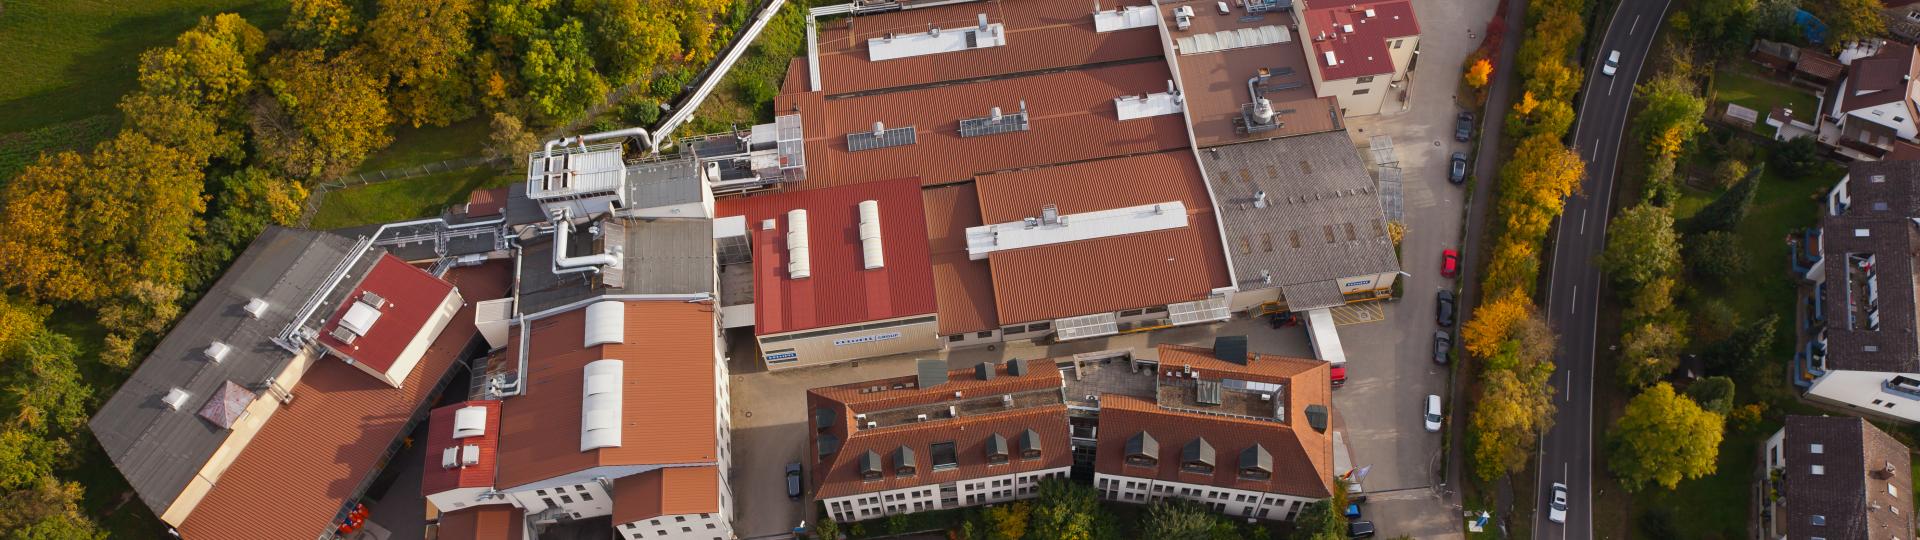 Aerial image Krempel Vaihingen/Enz